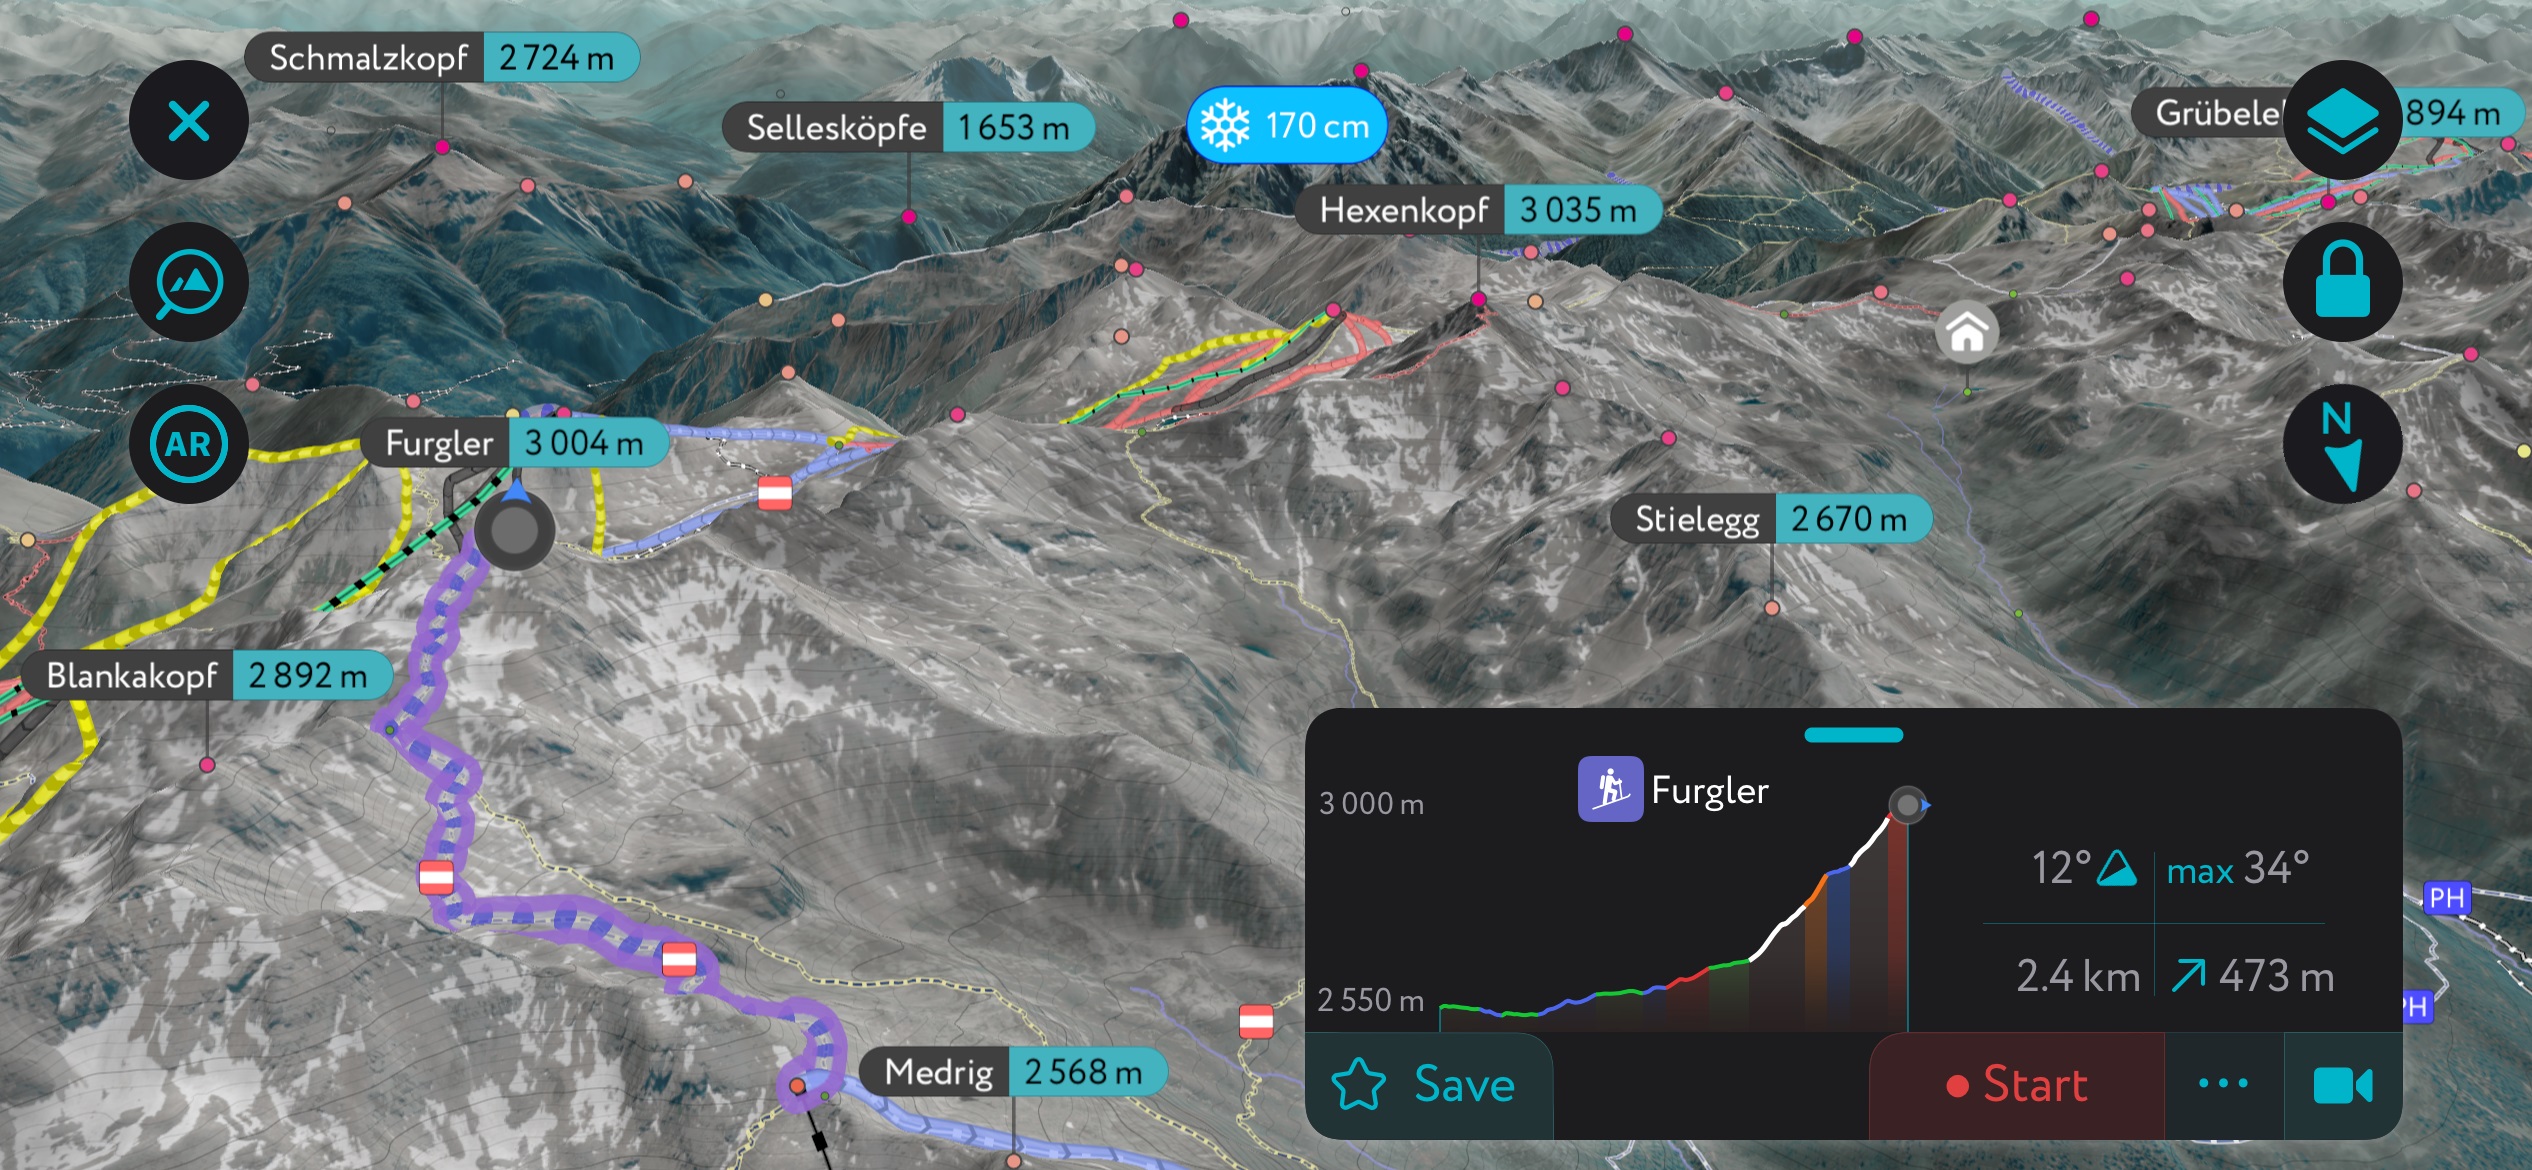 Furgler, as seen on the PeakVisor mobile app. Samnaun Alps